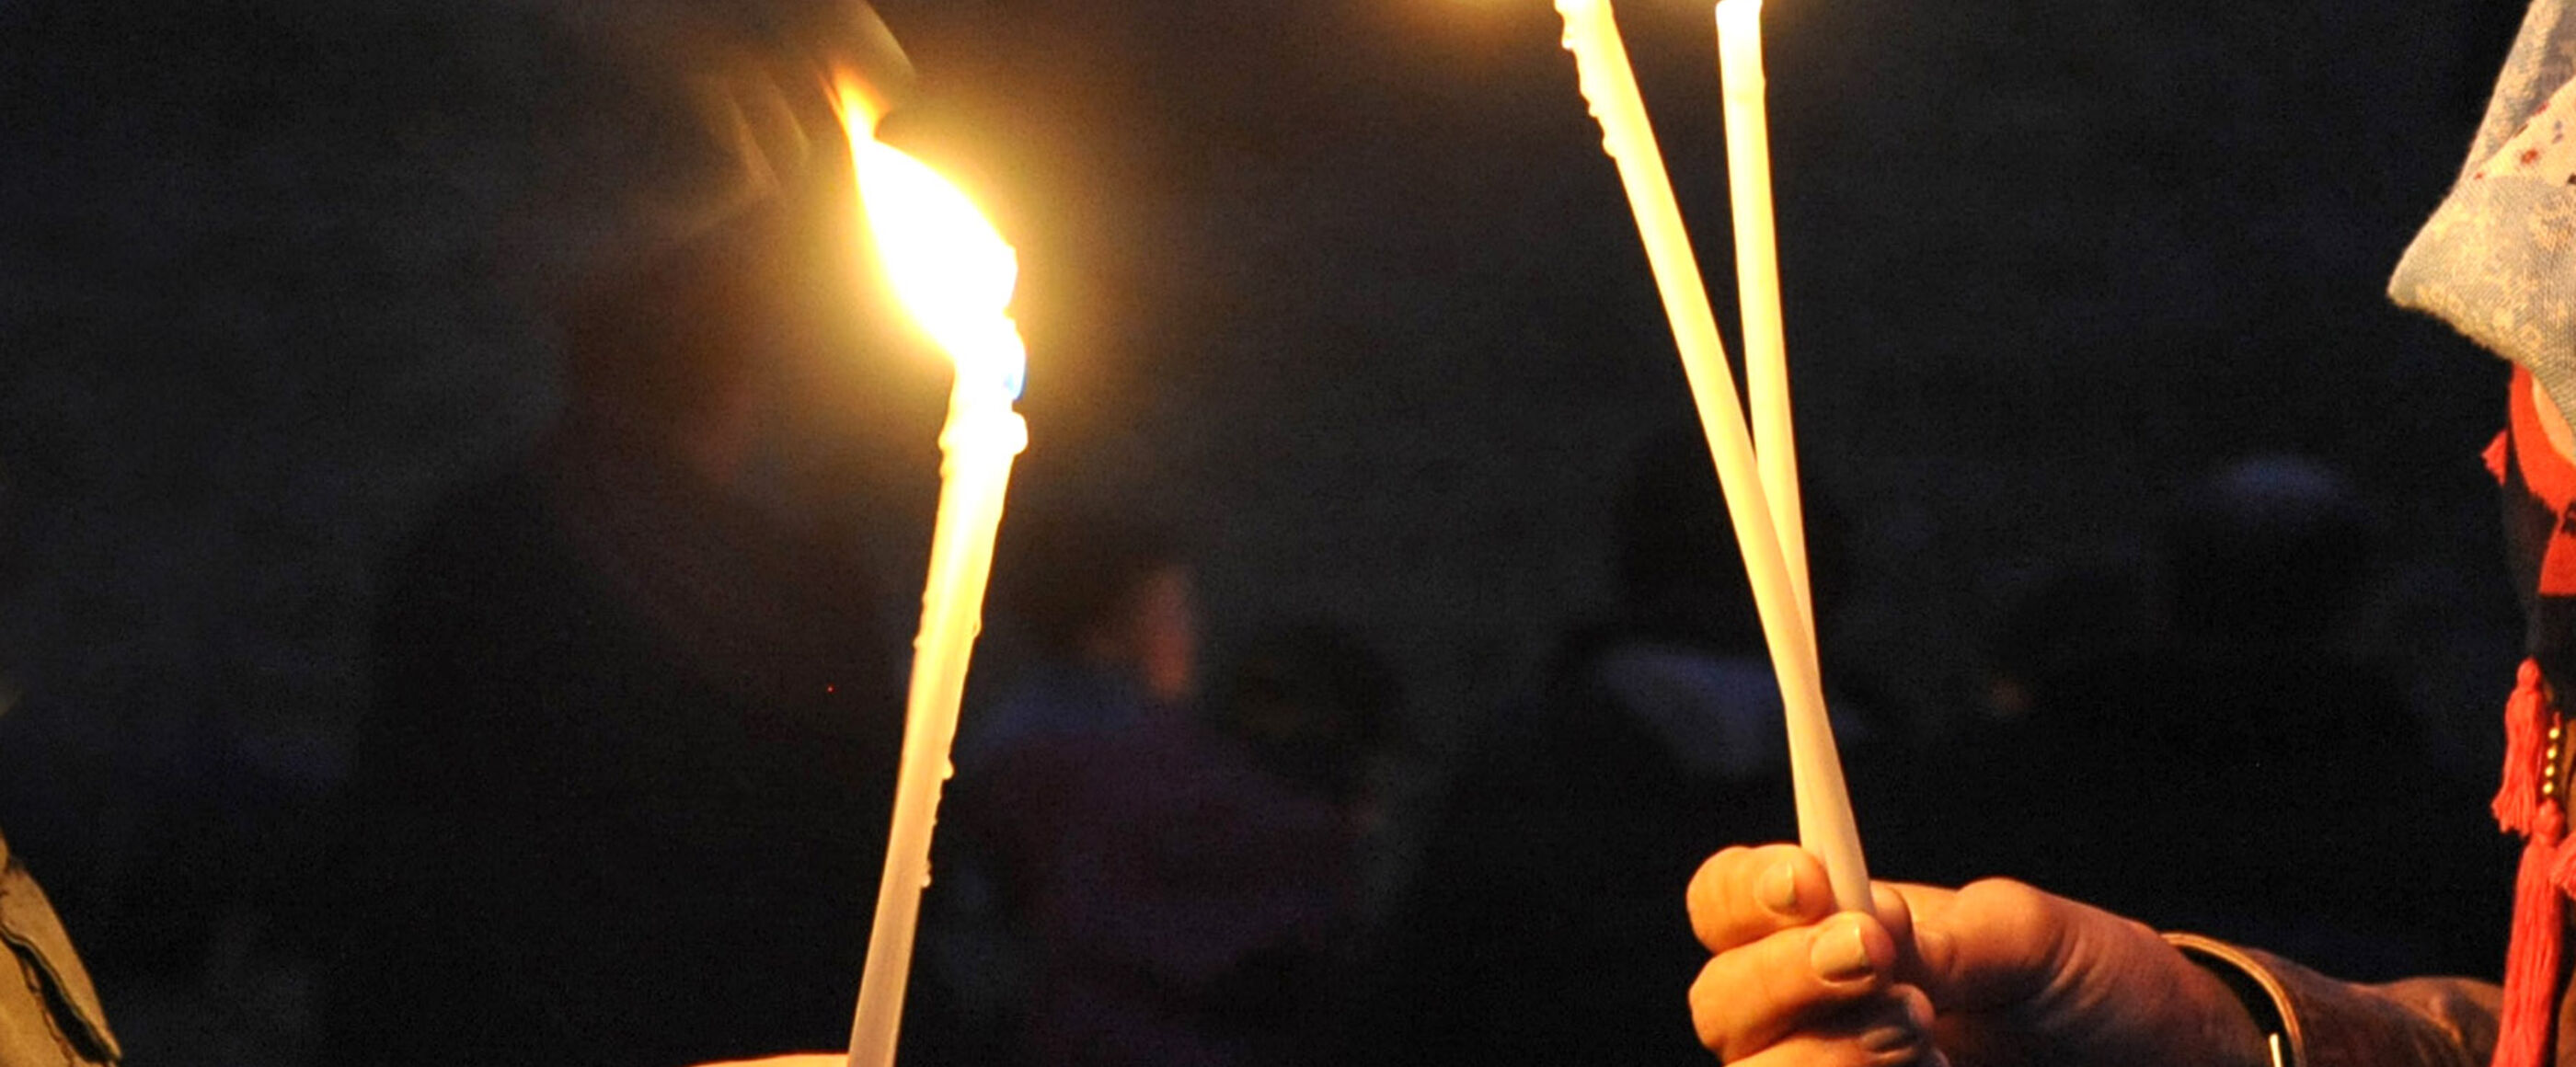 Zwei Menschen stehen sich gegenüber, zu sehen sind vor dunklem Hintergrund ihre Hände, die lange, dünne, brennende Kerzen halten.